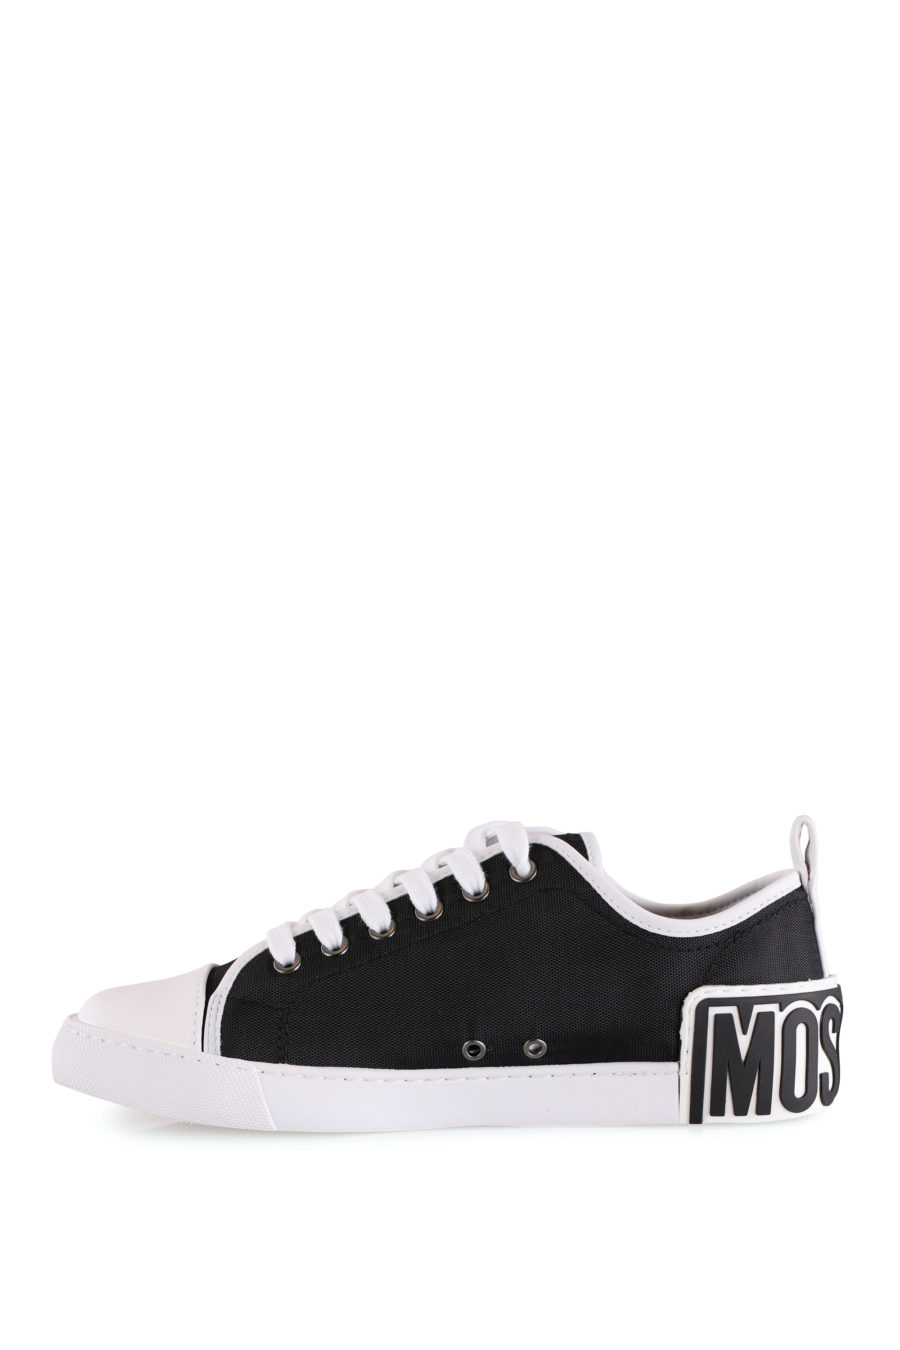 Zapatillas negras con borde blanco y logo - IMG 8417 copia